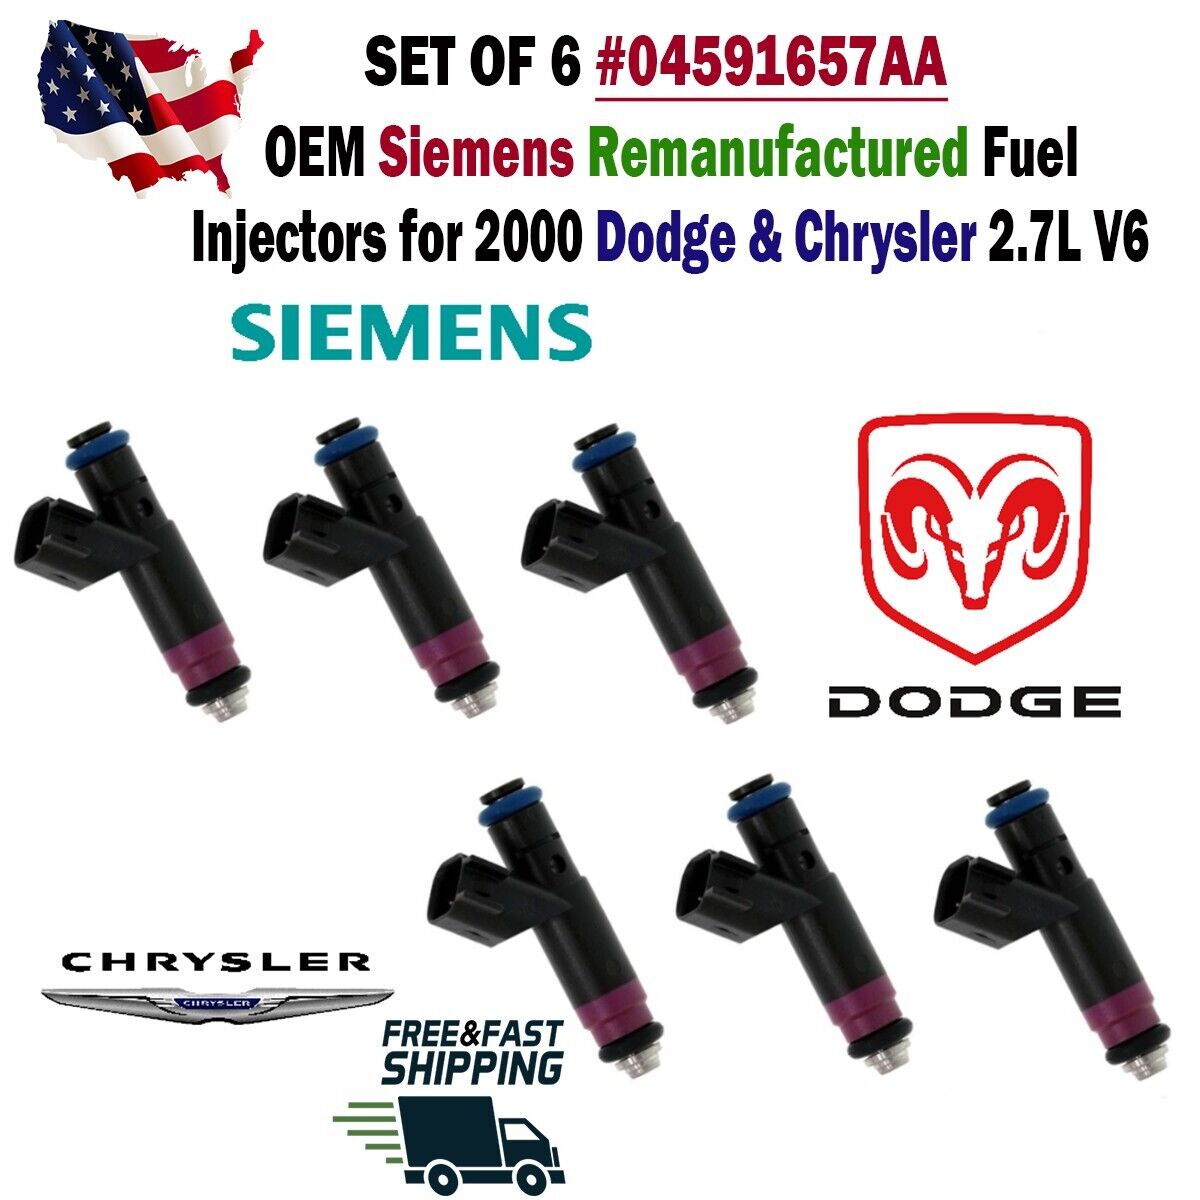 OEM Siemens x6 Fuel Injectors for 2000 Dodge & Chrysler 2.7L V6 #04591657AA